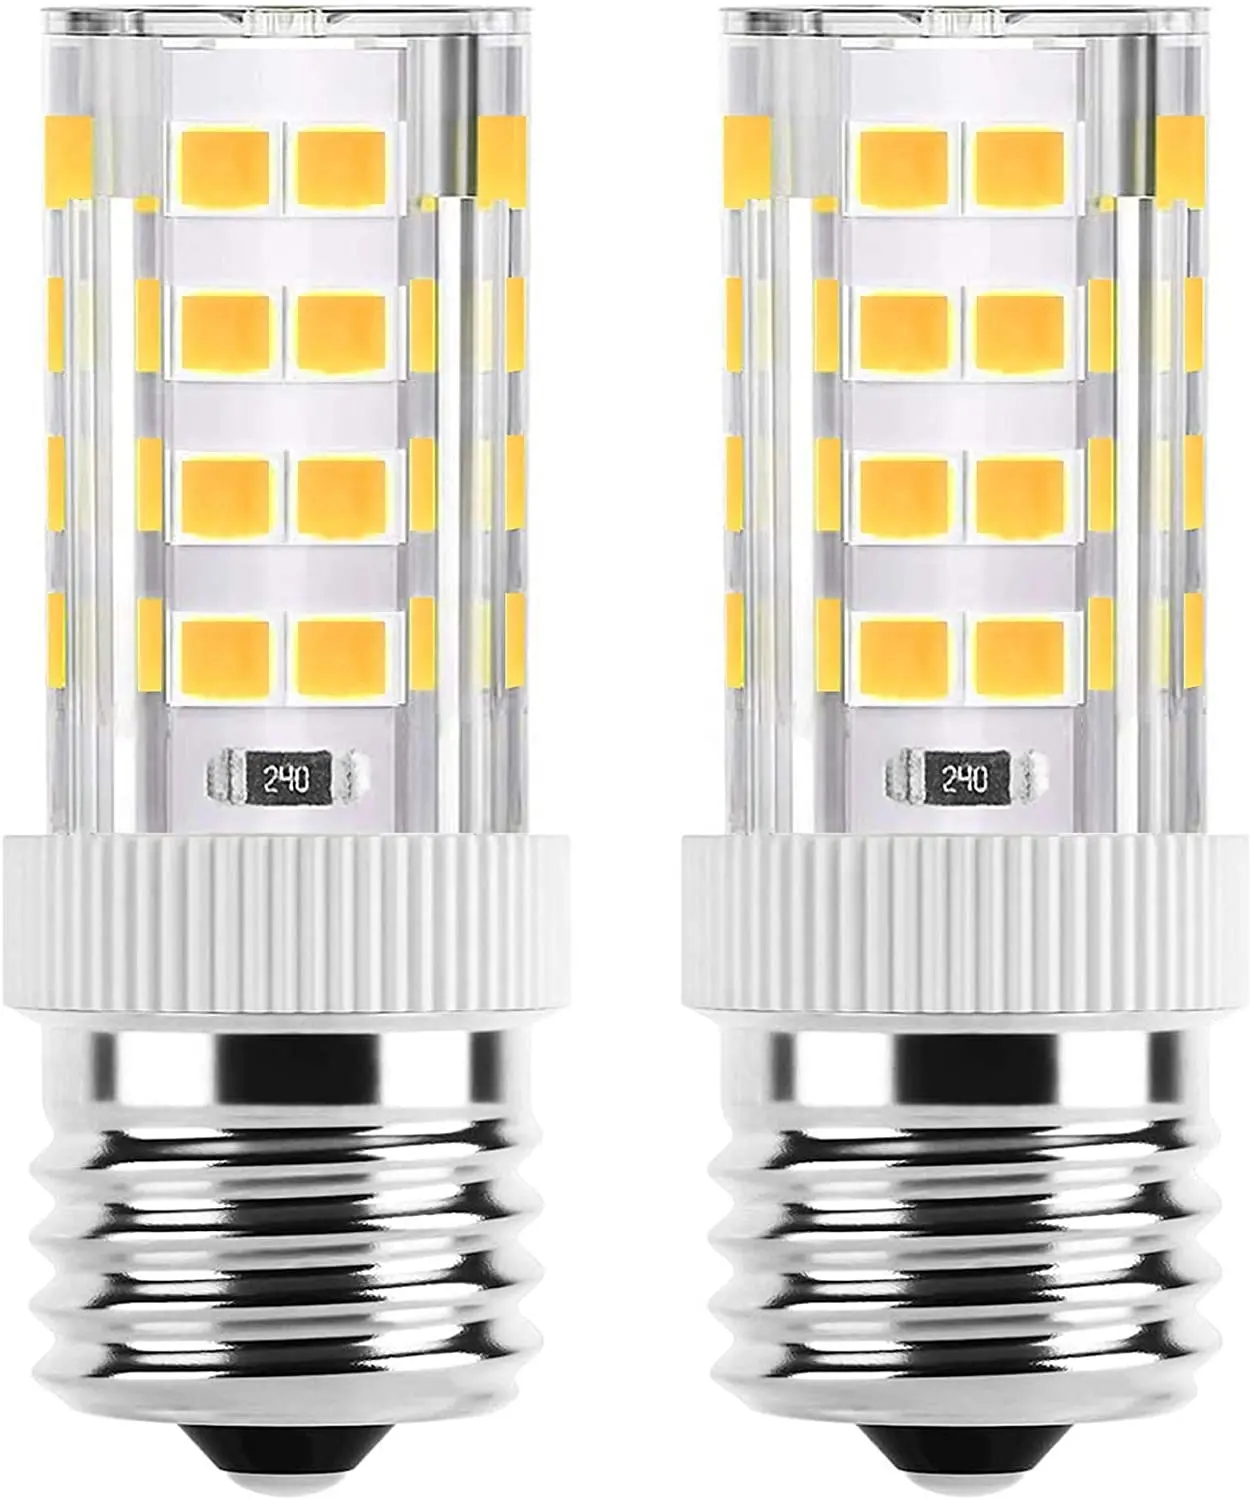 C7 S6 Night Light Bulb E14 E17 Refrigerator Fridge Freezer Lighting AC 120V 220V E11 E12 Corn Light